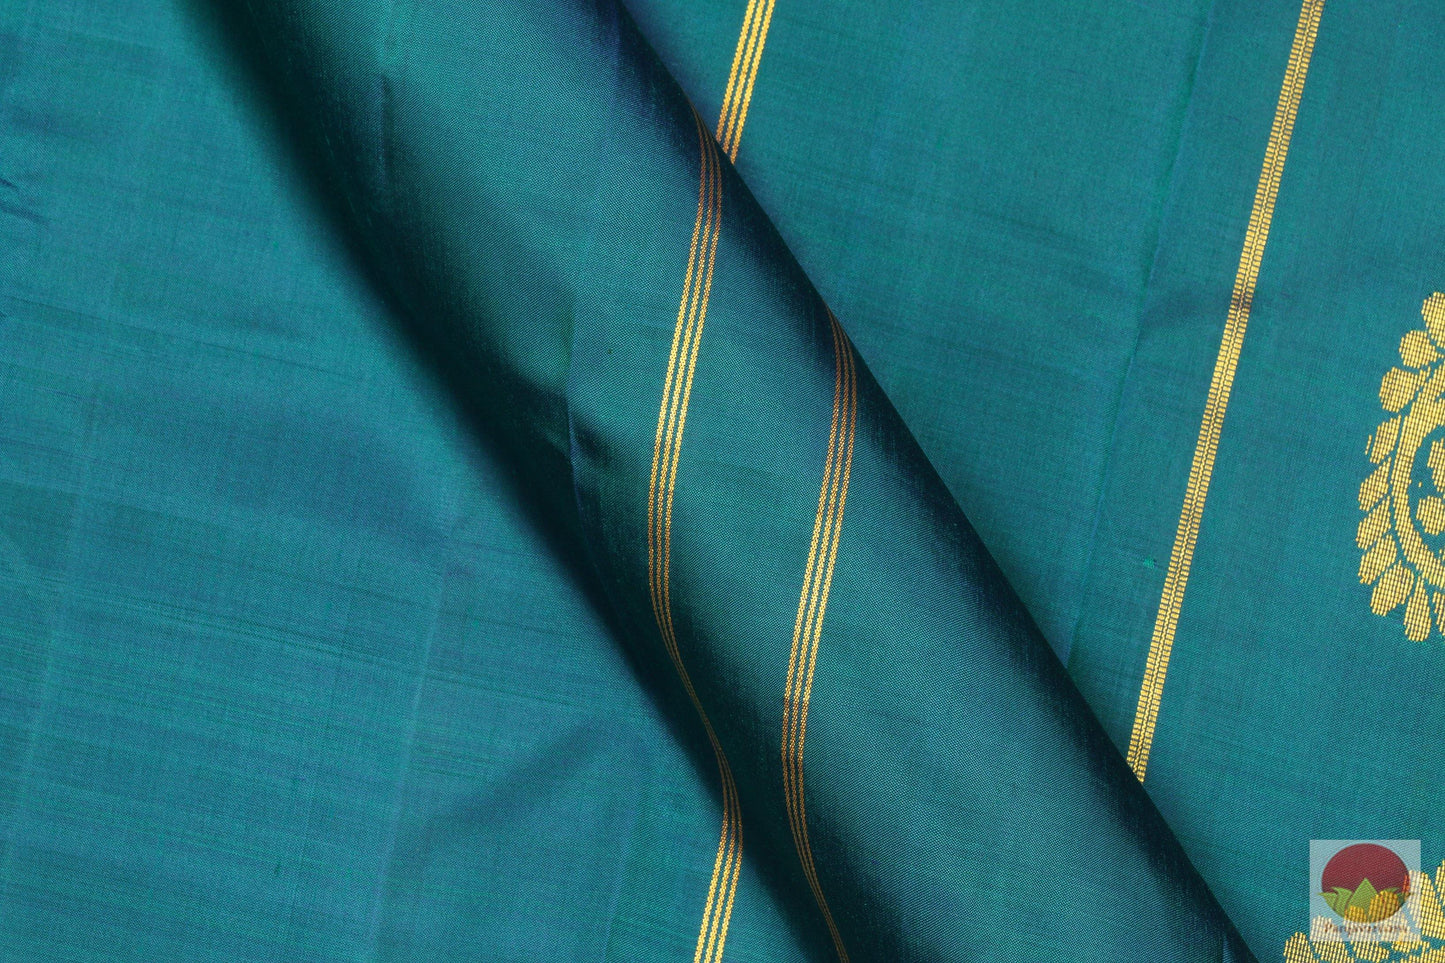 Lite Weight Handwoven Pure Silk Kanjivaram Saree - PV G 1866 Archives - Silk Sari - Panjavarnam